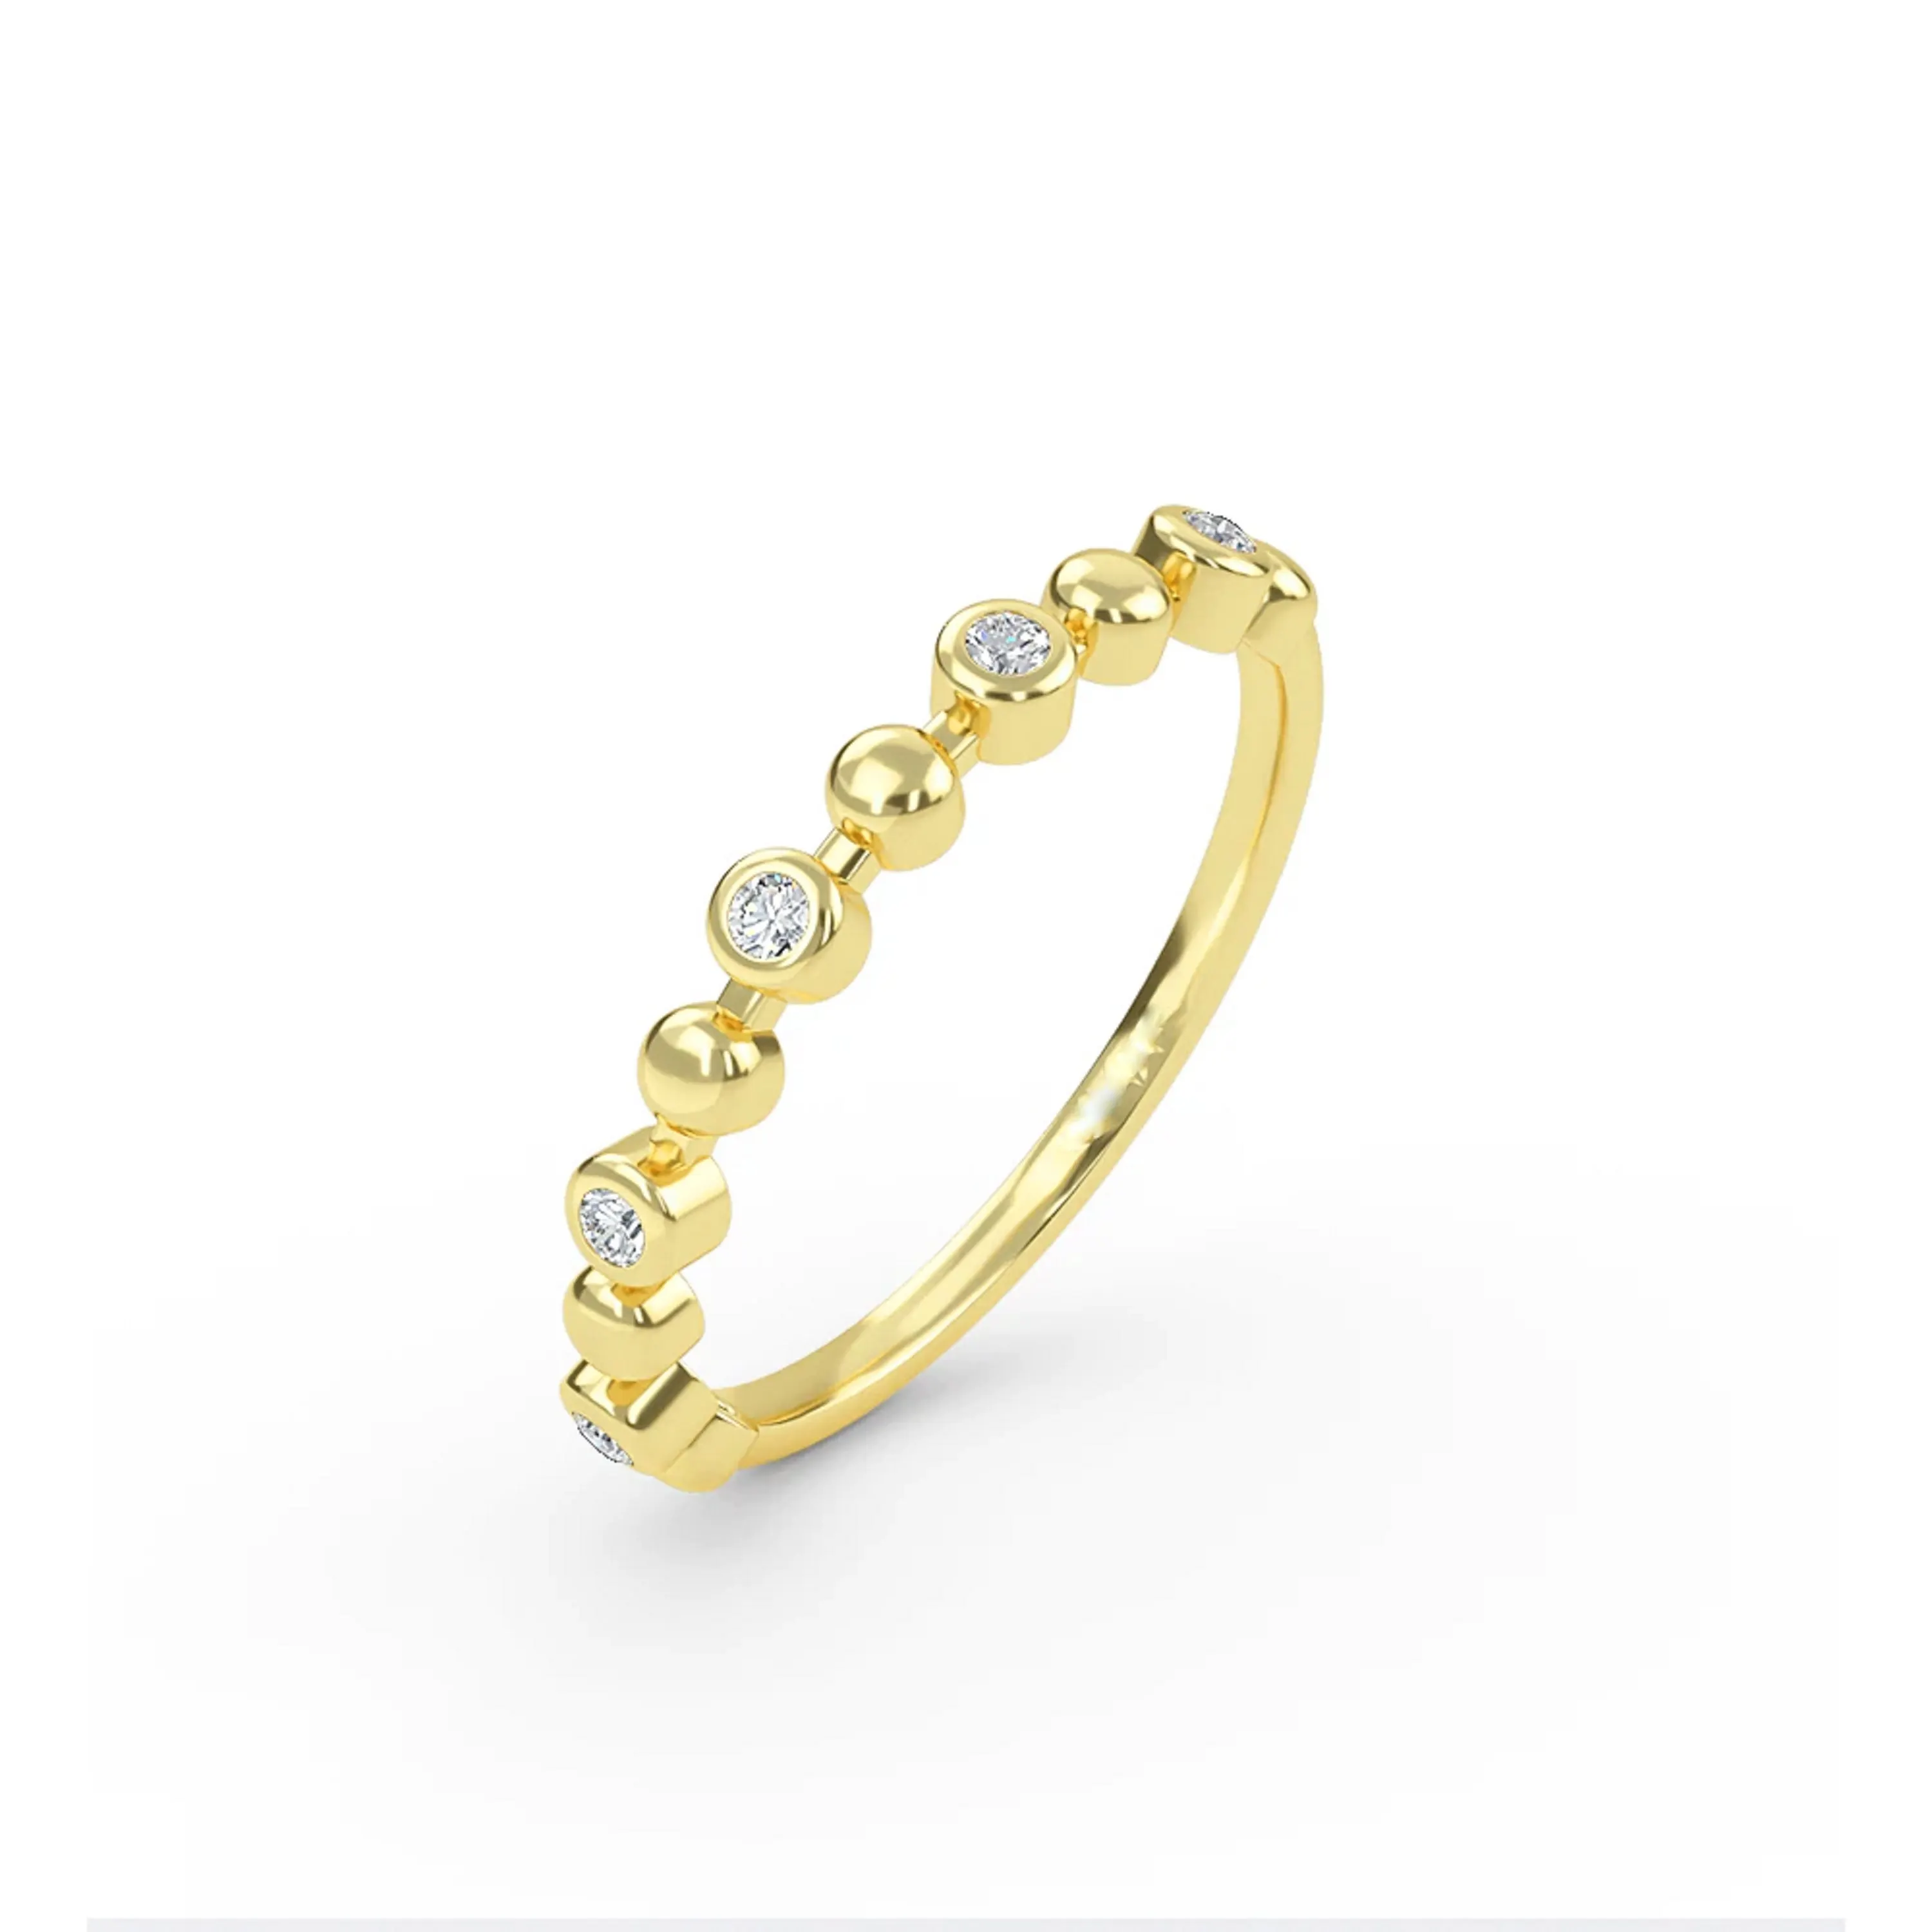 המכירה העליונה של תכשיטים משובחים יהלומים חתונה moissanite טבעות כסף אמיתי לנשים מיצואן הודי במחיר הטוב ביותר